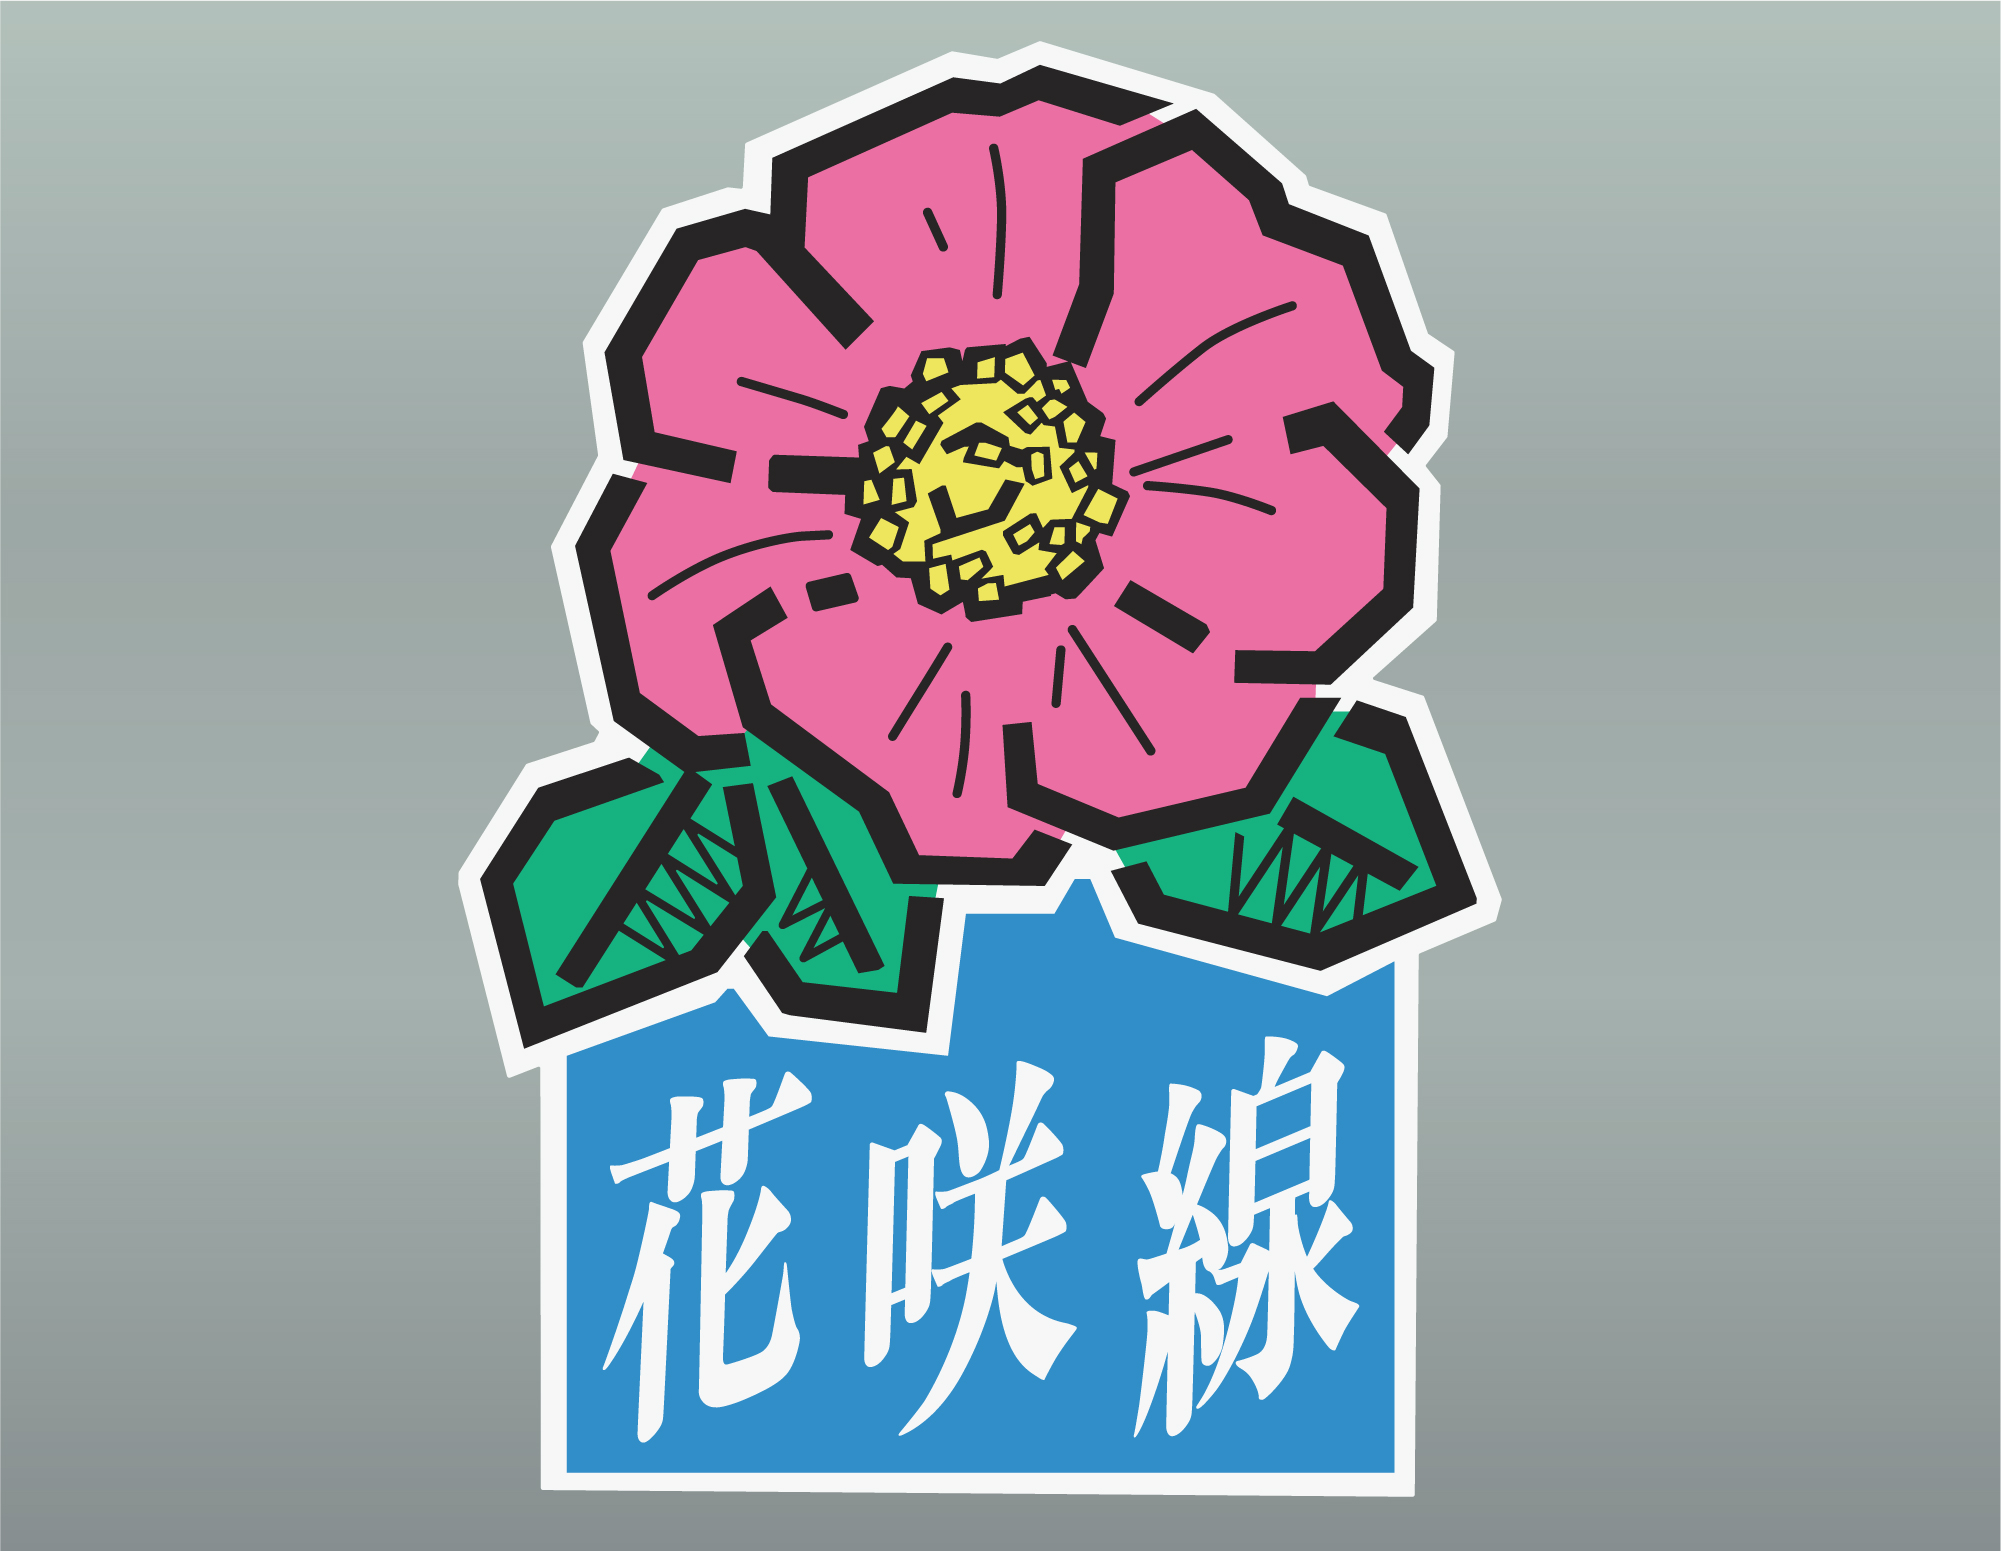 花咲線ロゴマーク